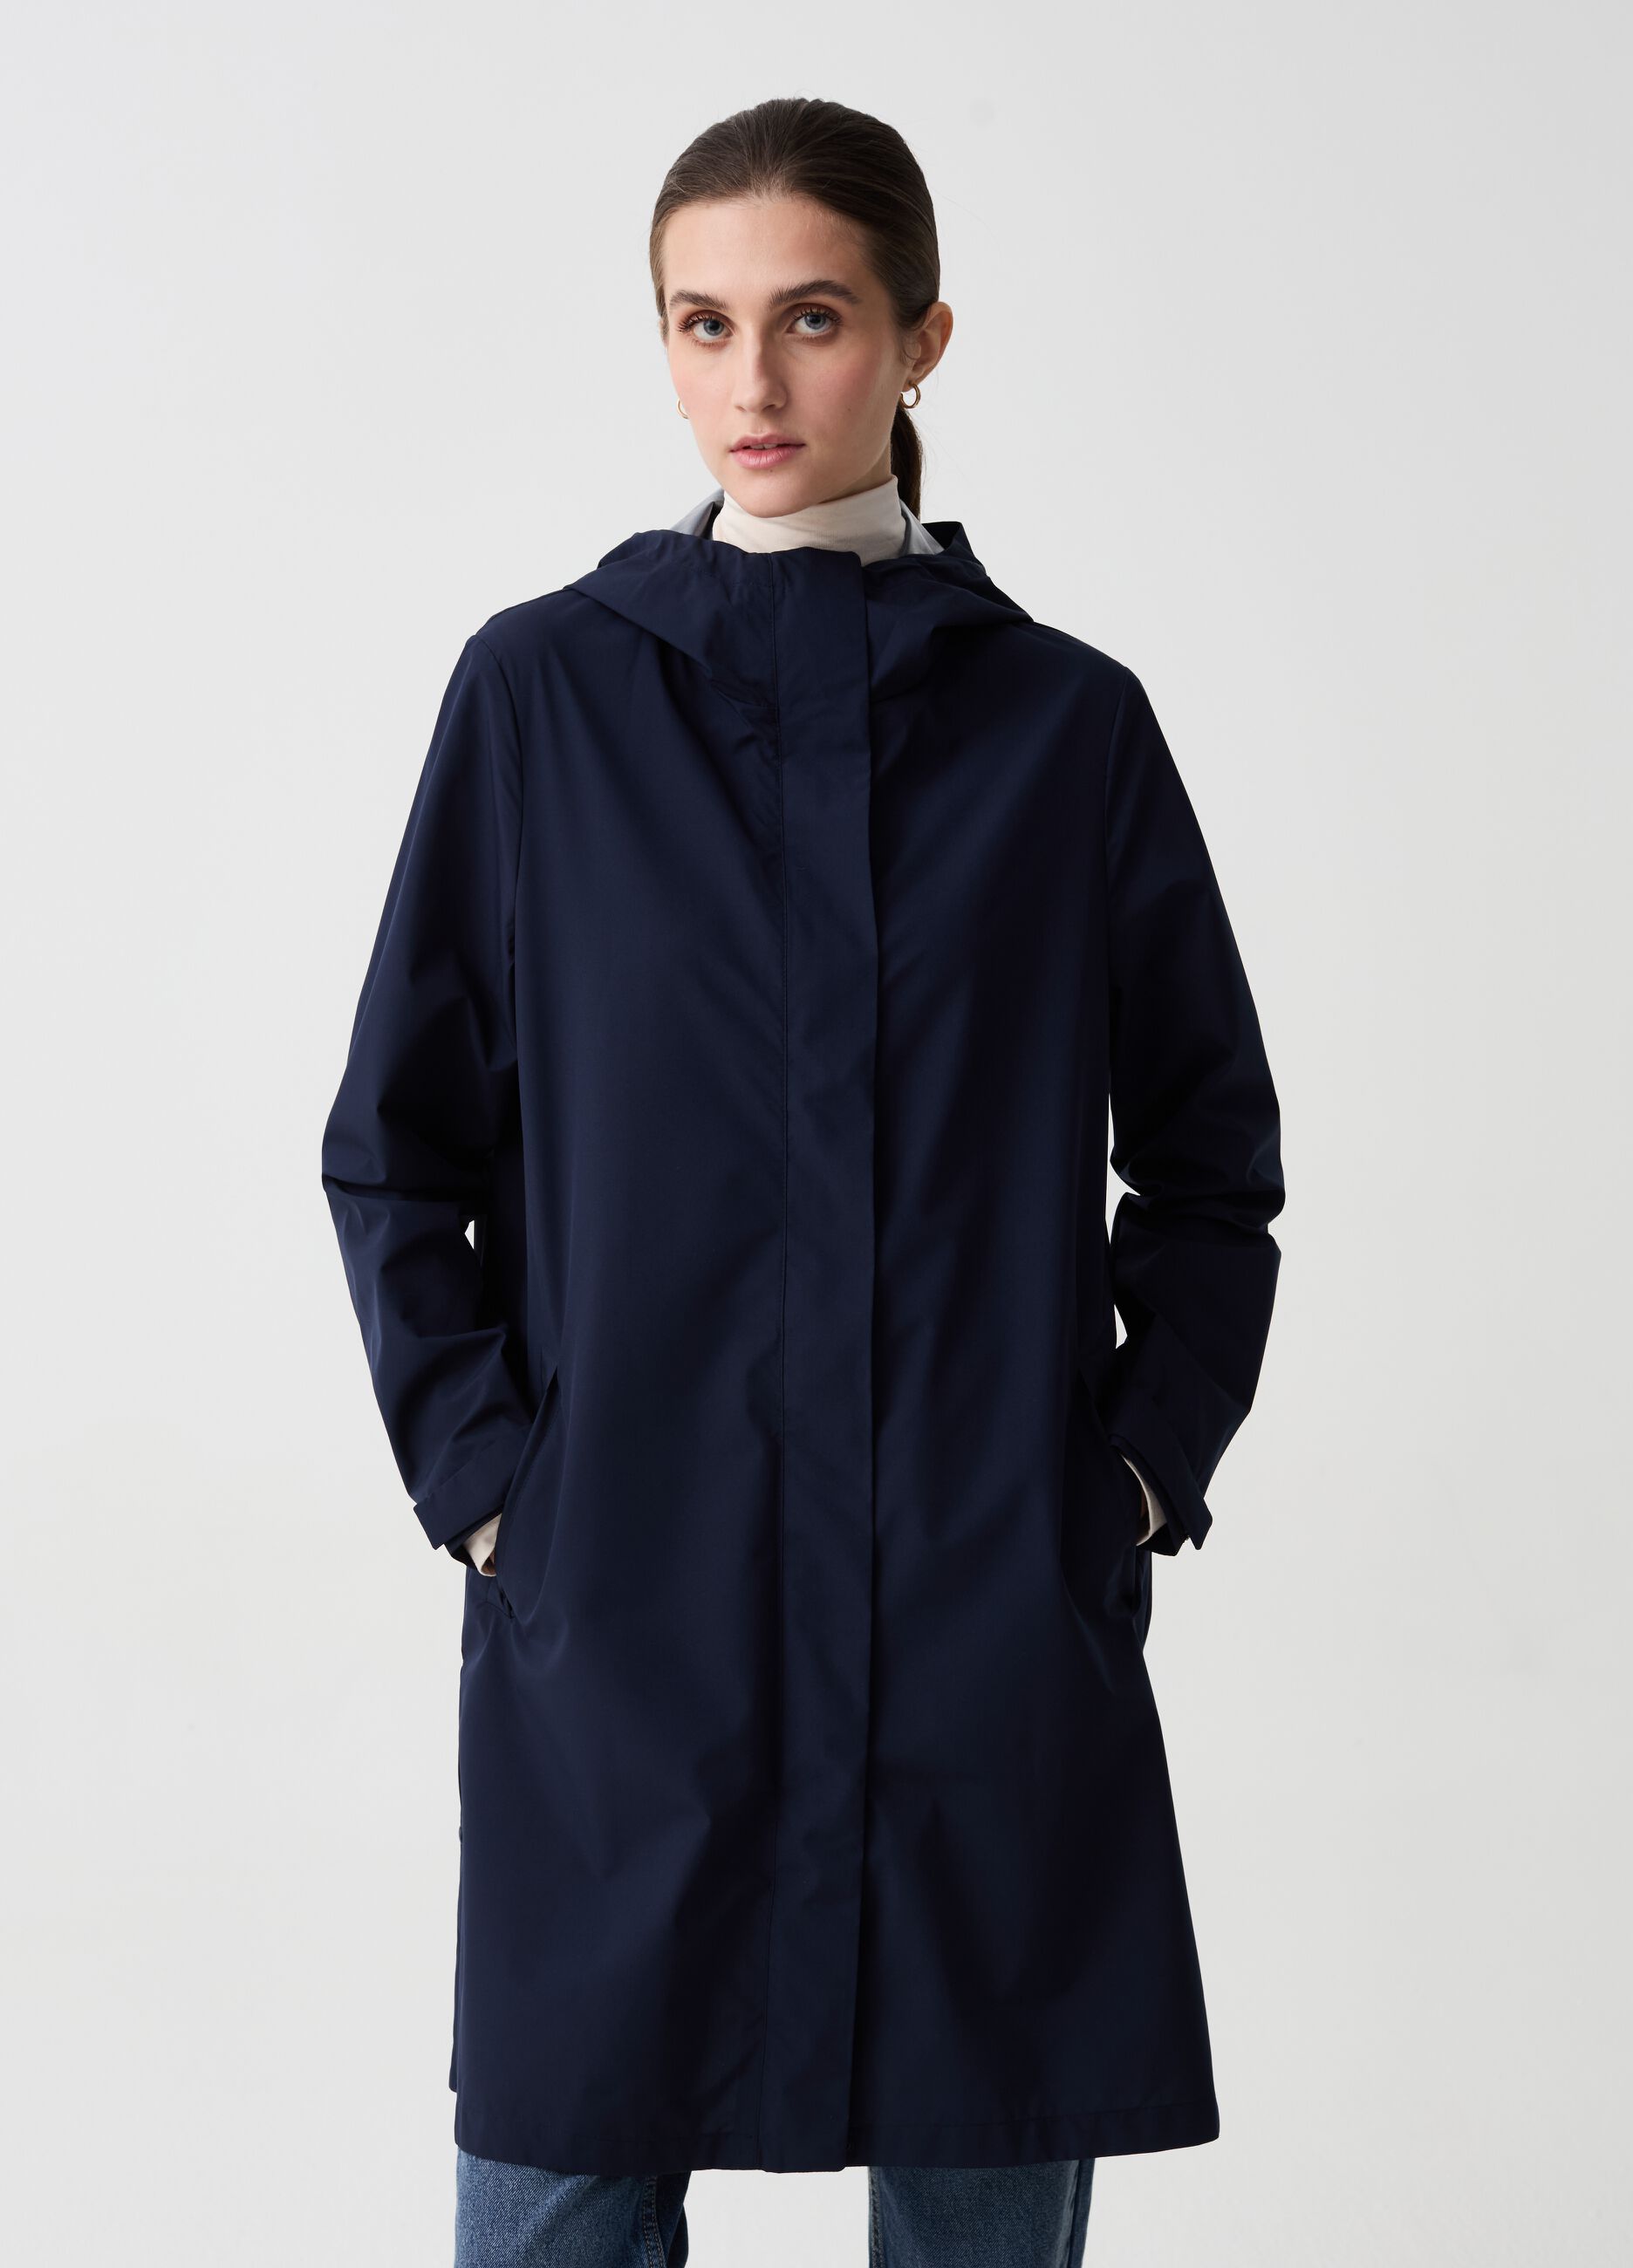 Long full-zip waterproof jacket with hood